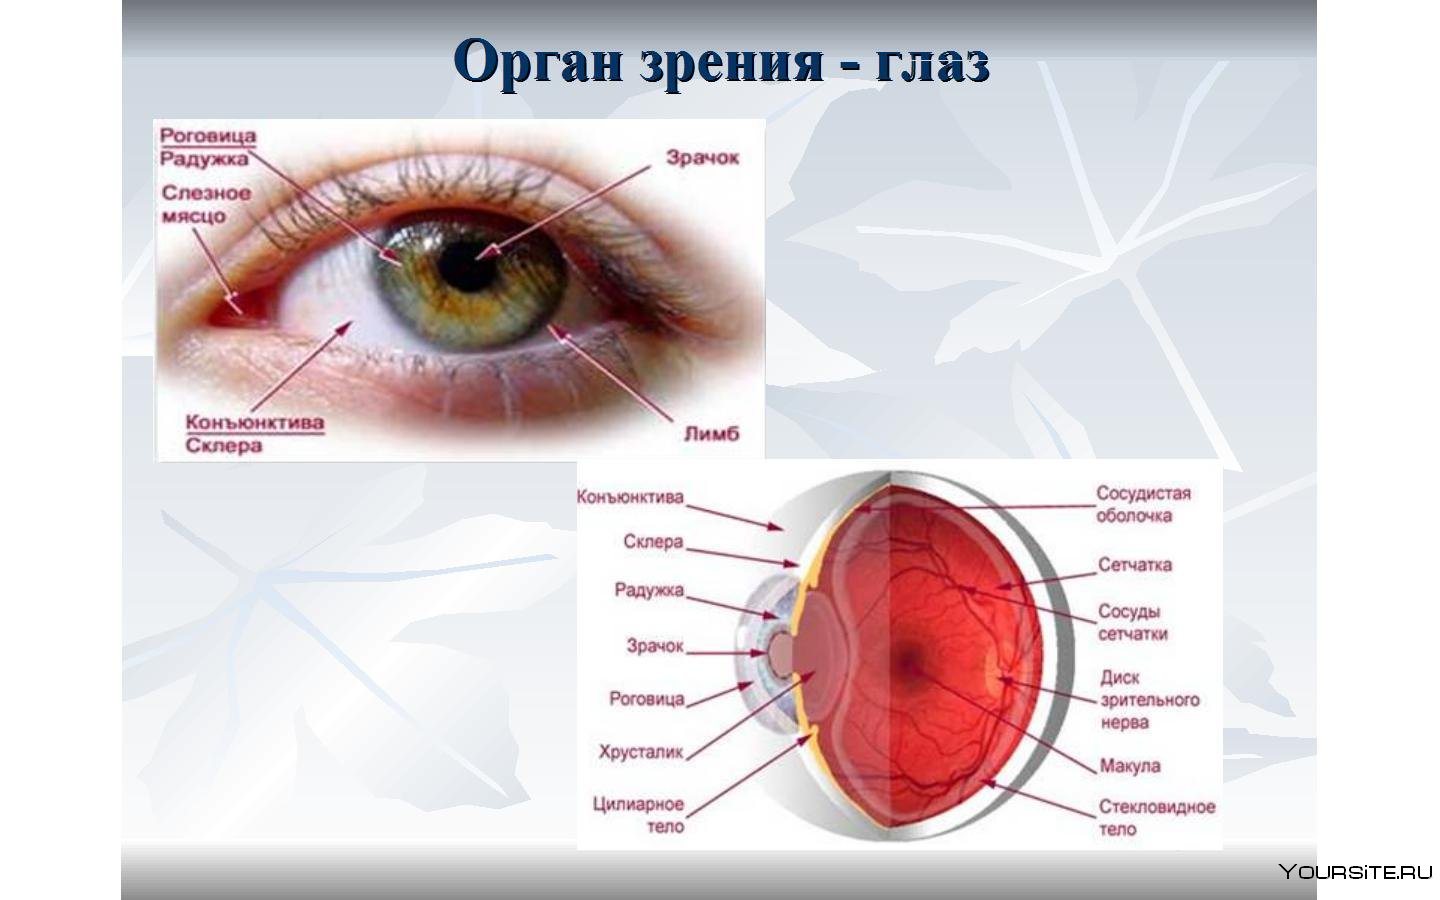 Глаз орган чувств человека. Органы чувств анатомия глаз. Строение глаза человека слезное мясцо. Из чего состоит глаз. Строение органа зрения.